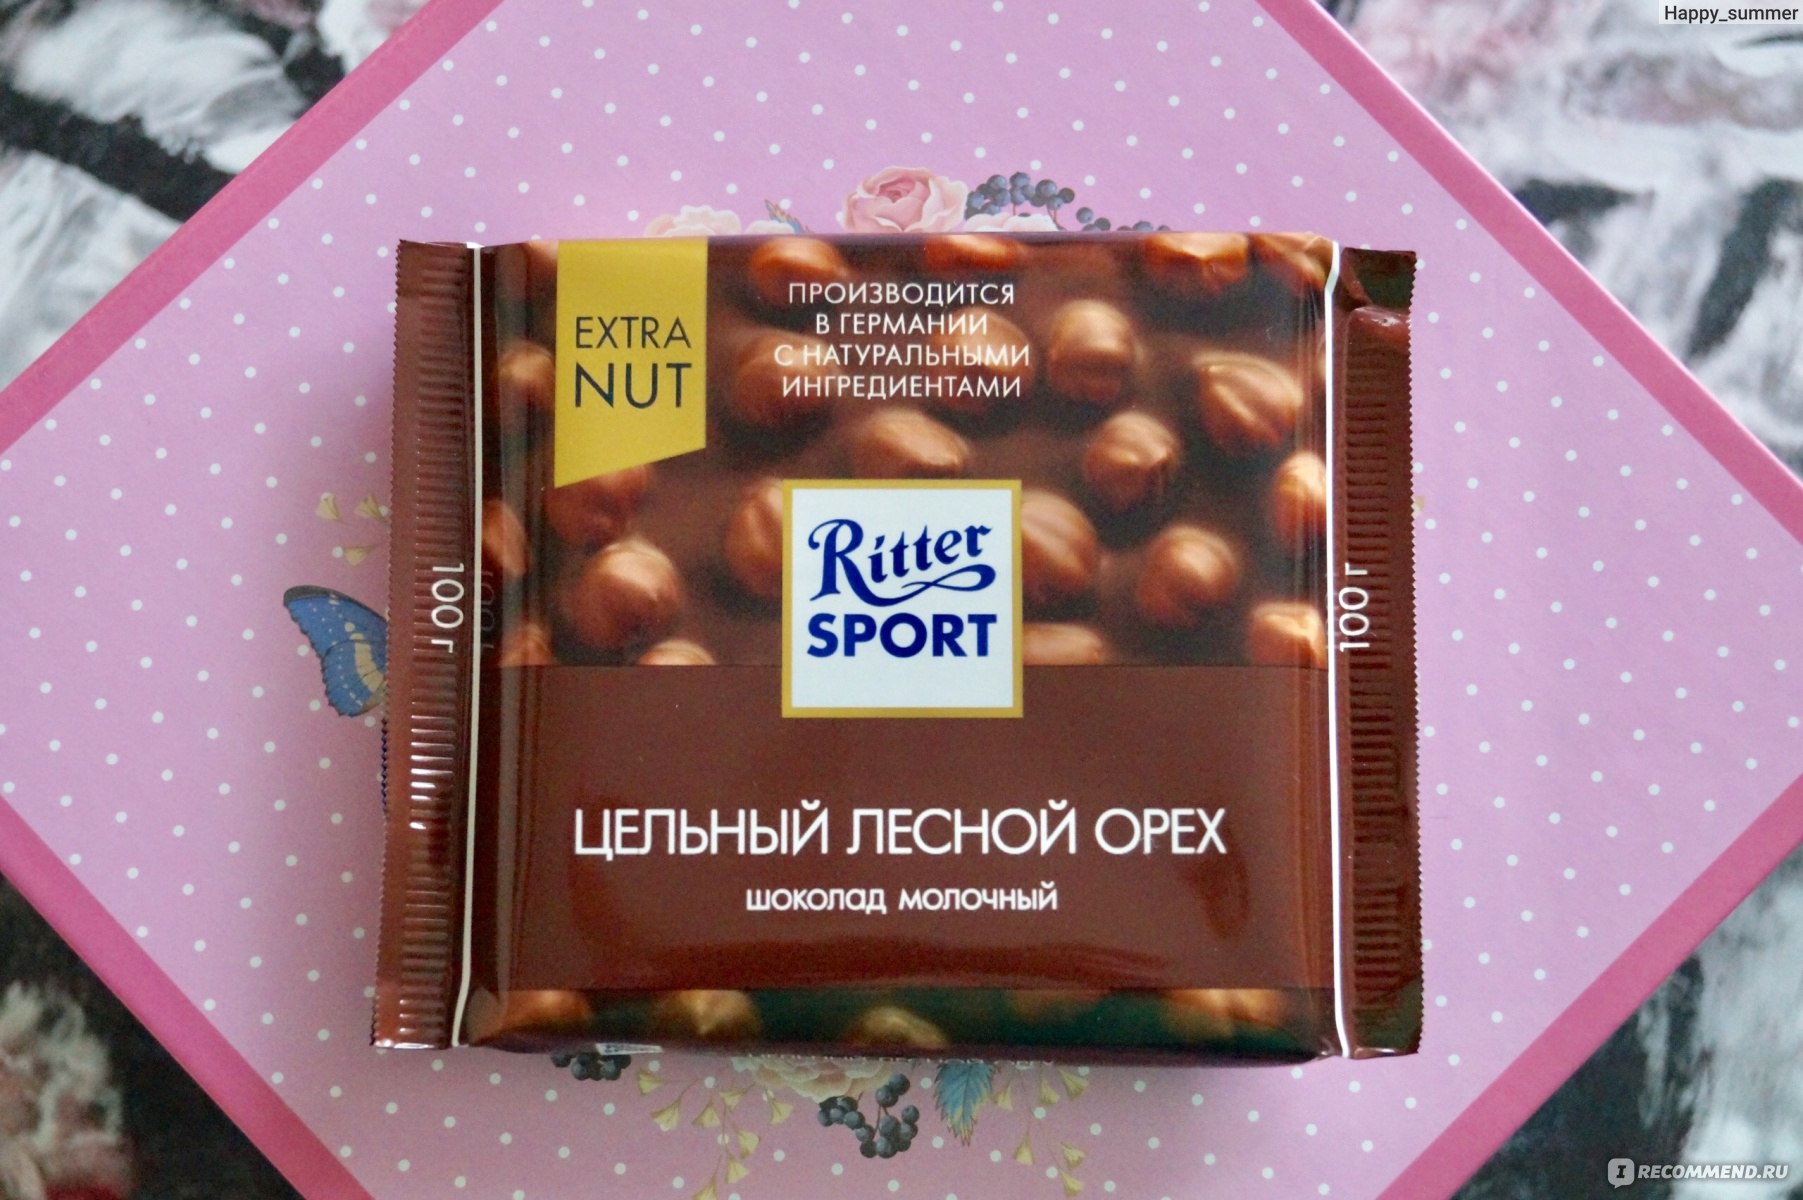 Шоколадки Ritter Sport вкусы